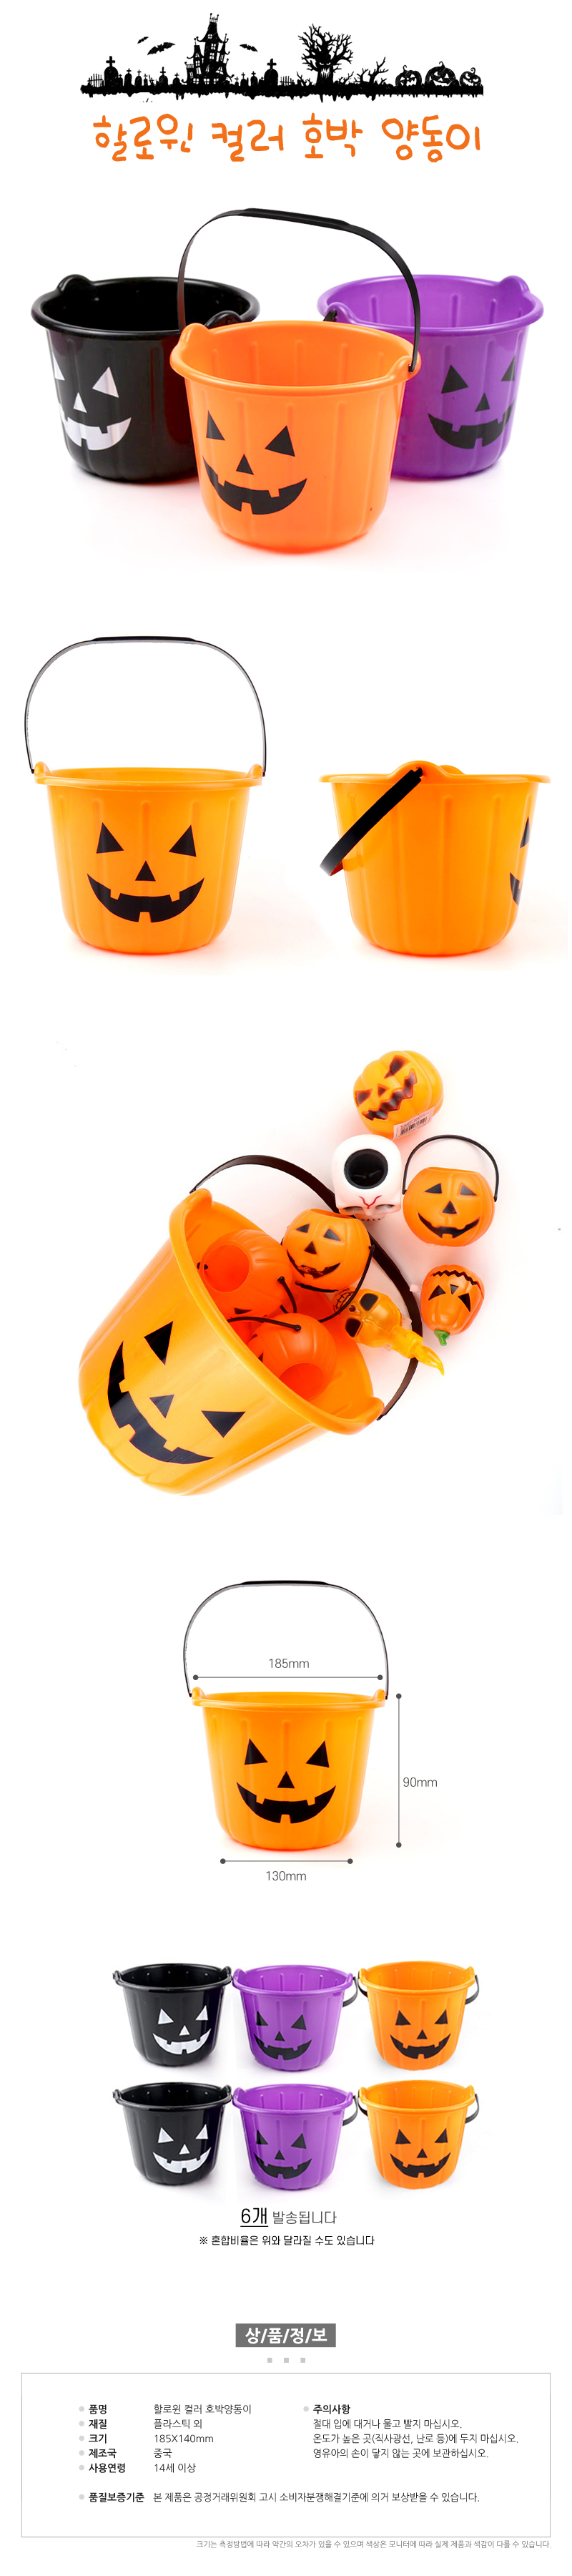 HalloweenColorPumpkinBasket.jpg